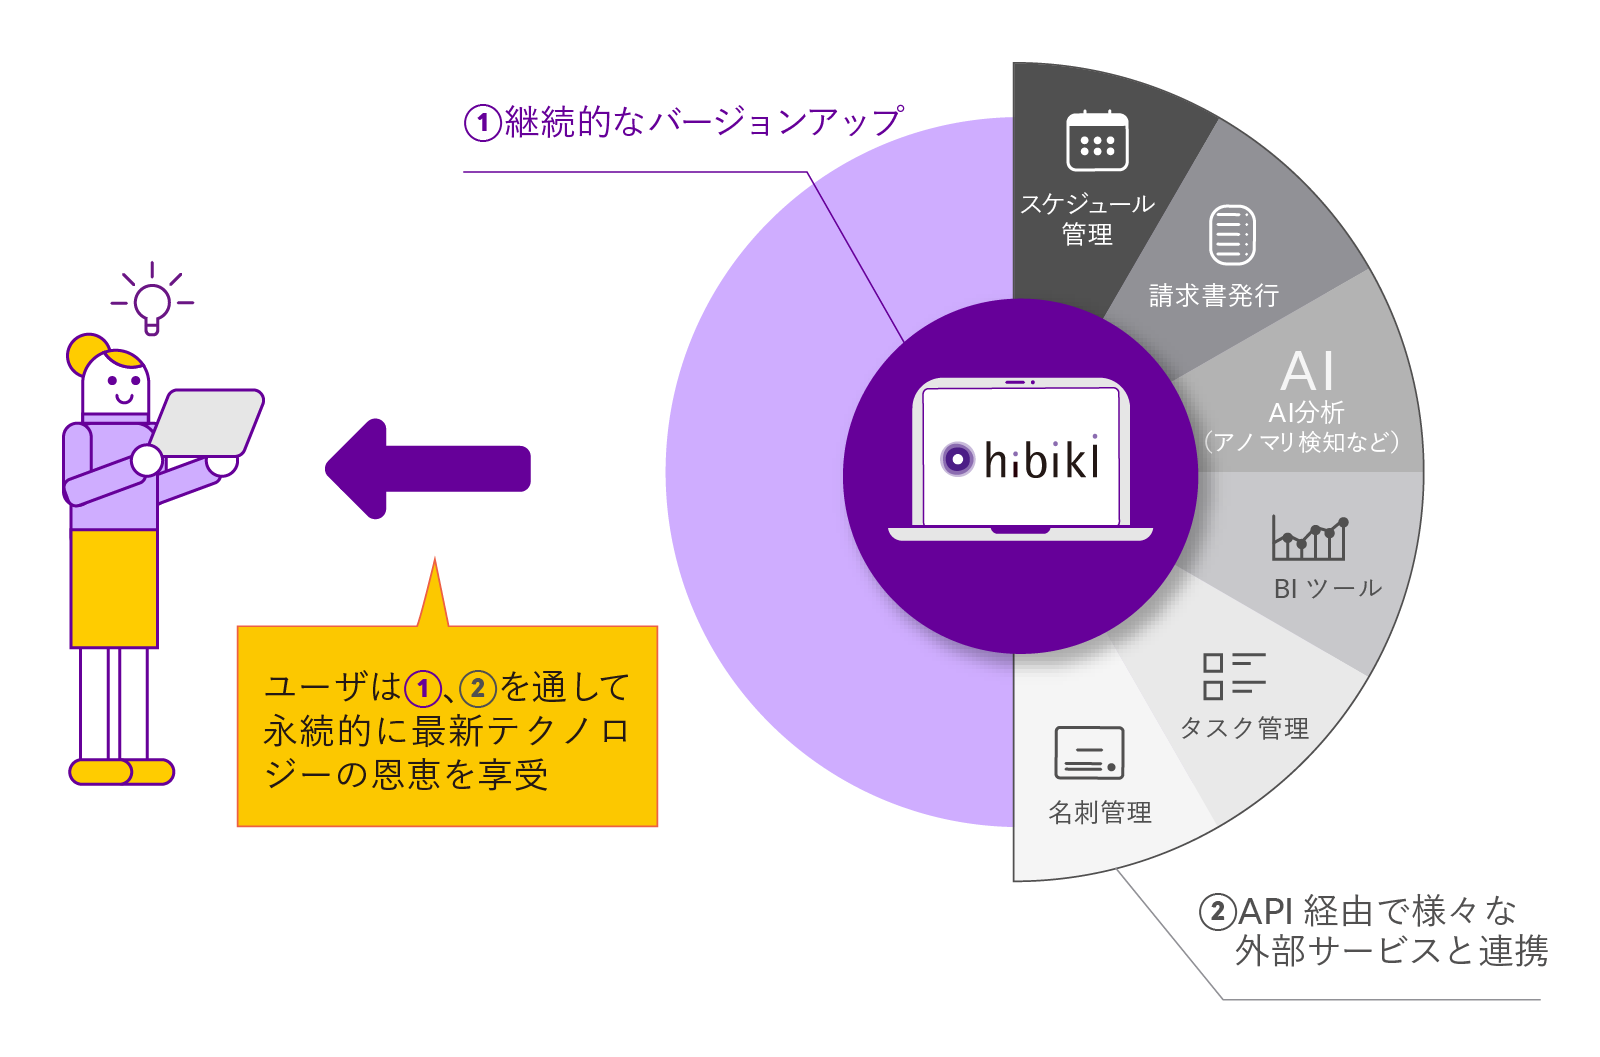 クラウドサービス「hibiki」を中心としたサービス連携イメージ